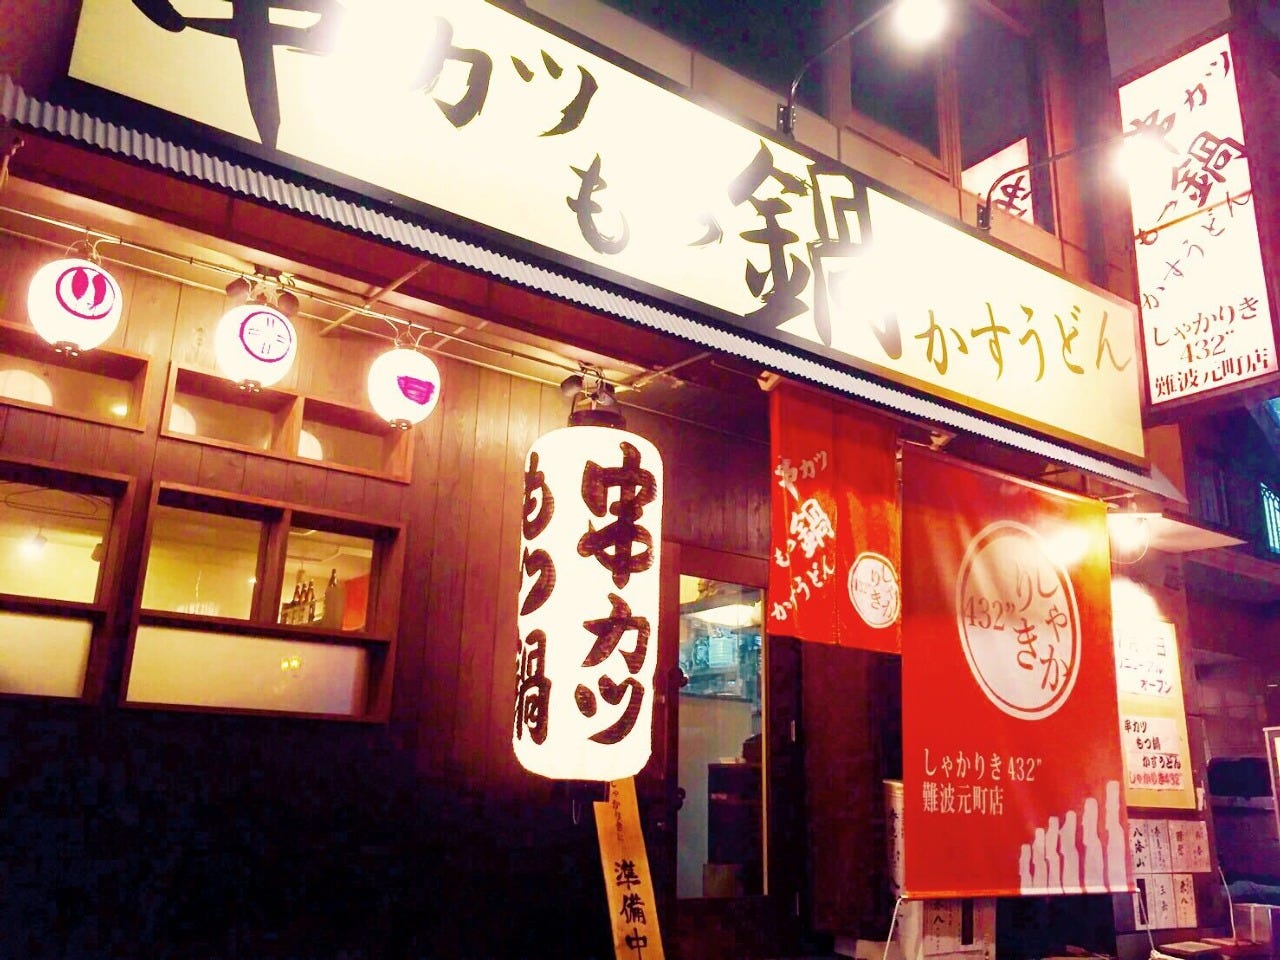 白の提灯に赤の暖簾が目を惹く「しゃかりき432” 難波元町店」外観